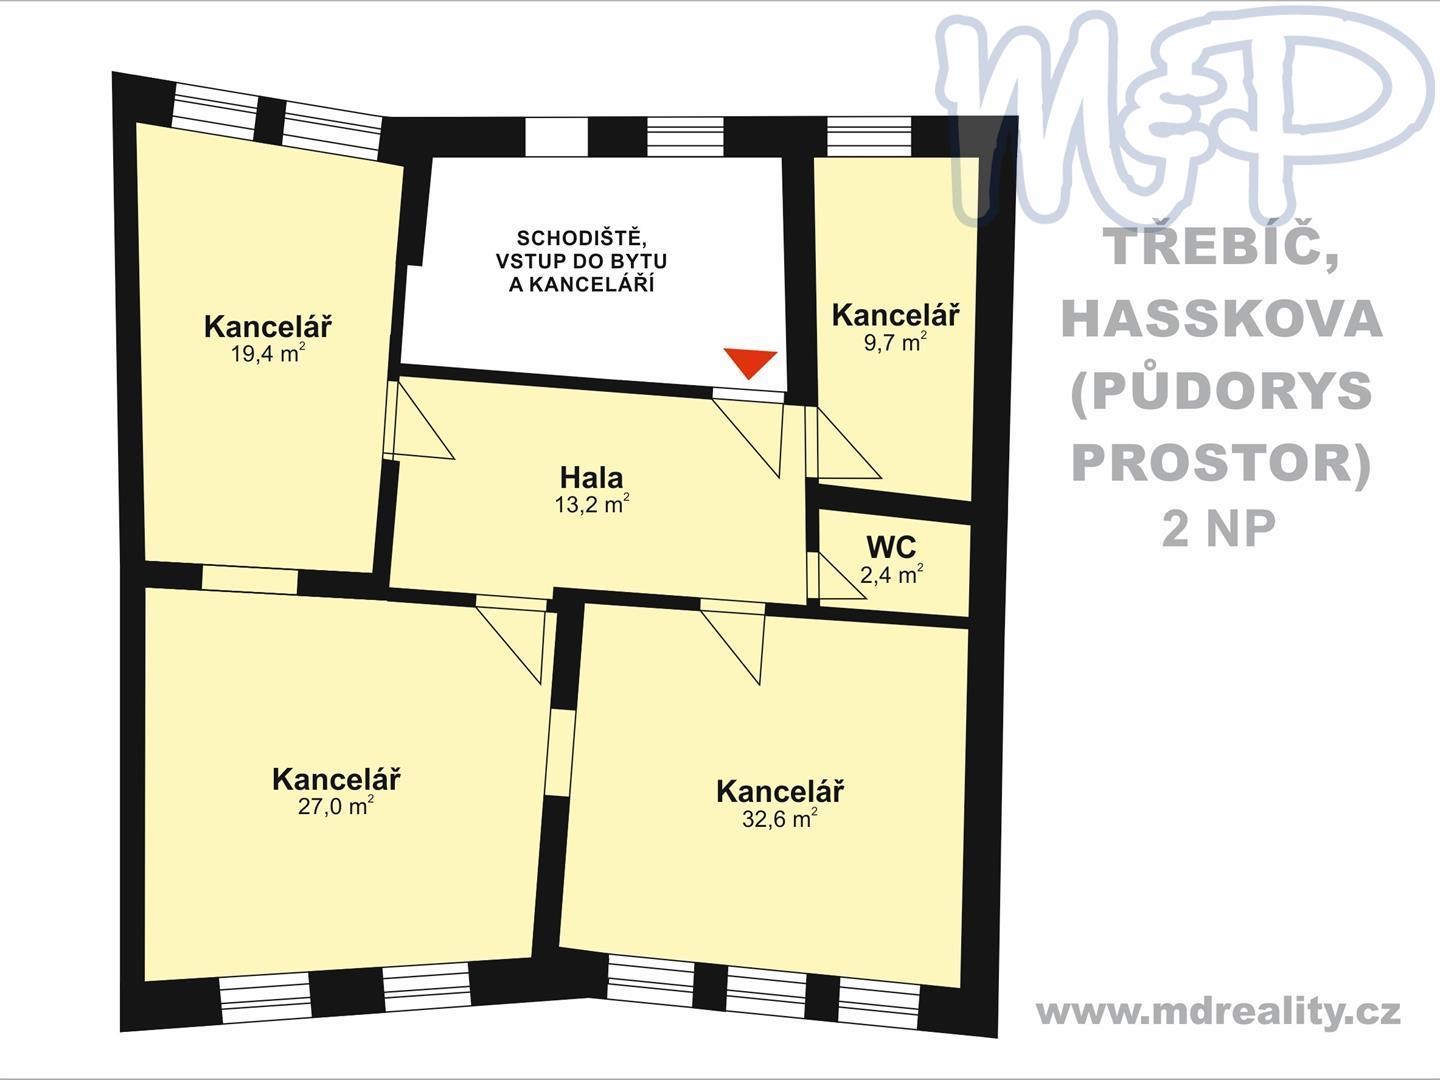 Pronájem kancelářských prostorů v historickém centru Třebíče (2NP)